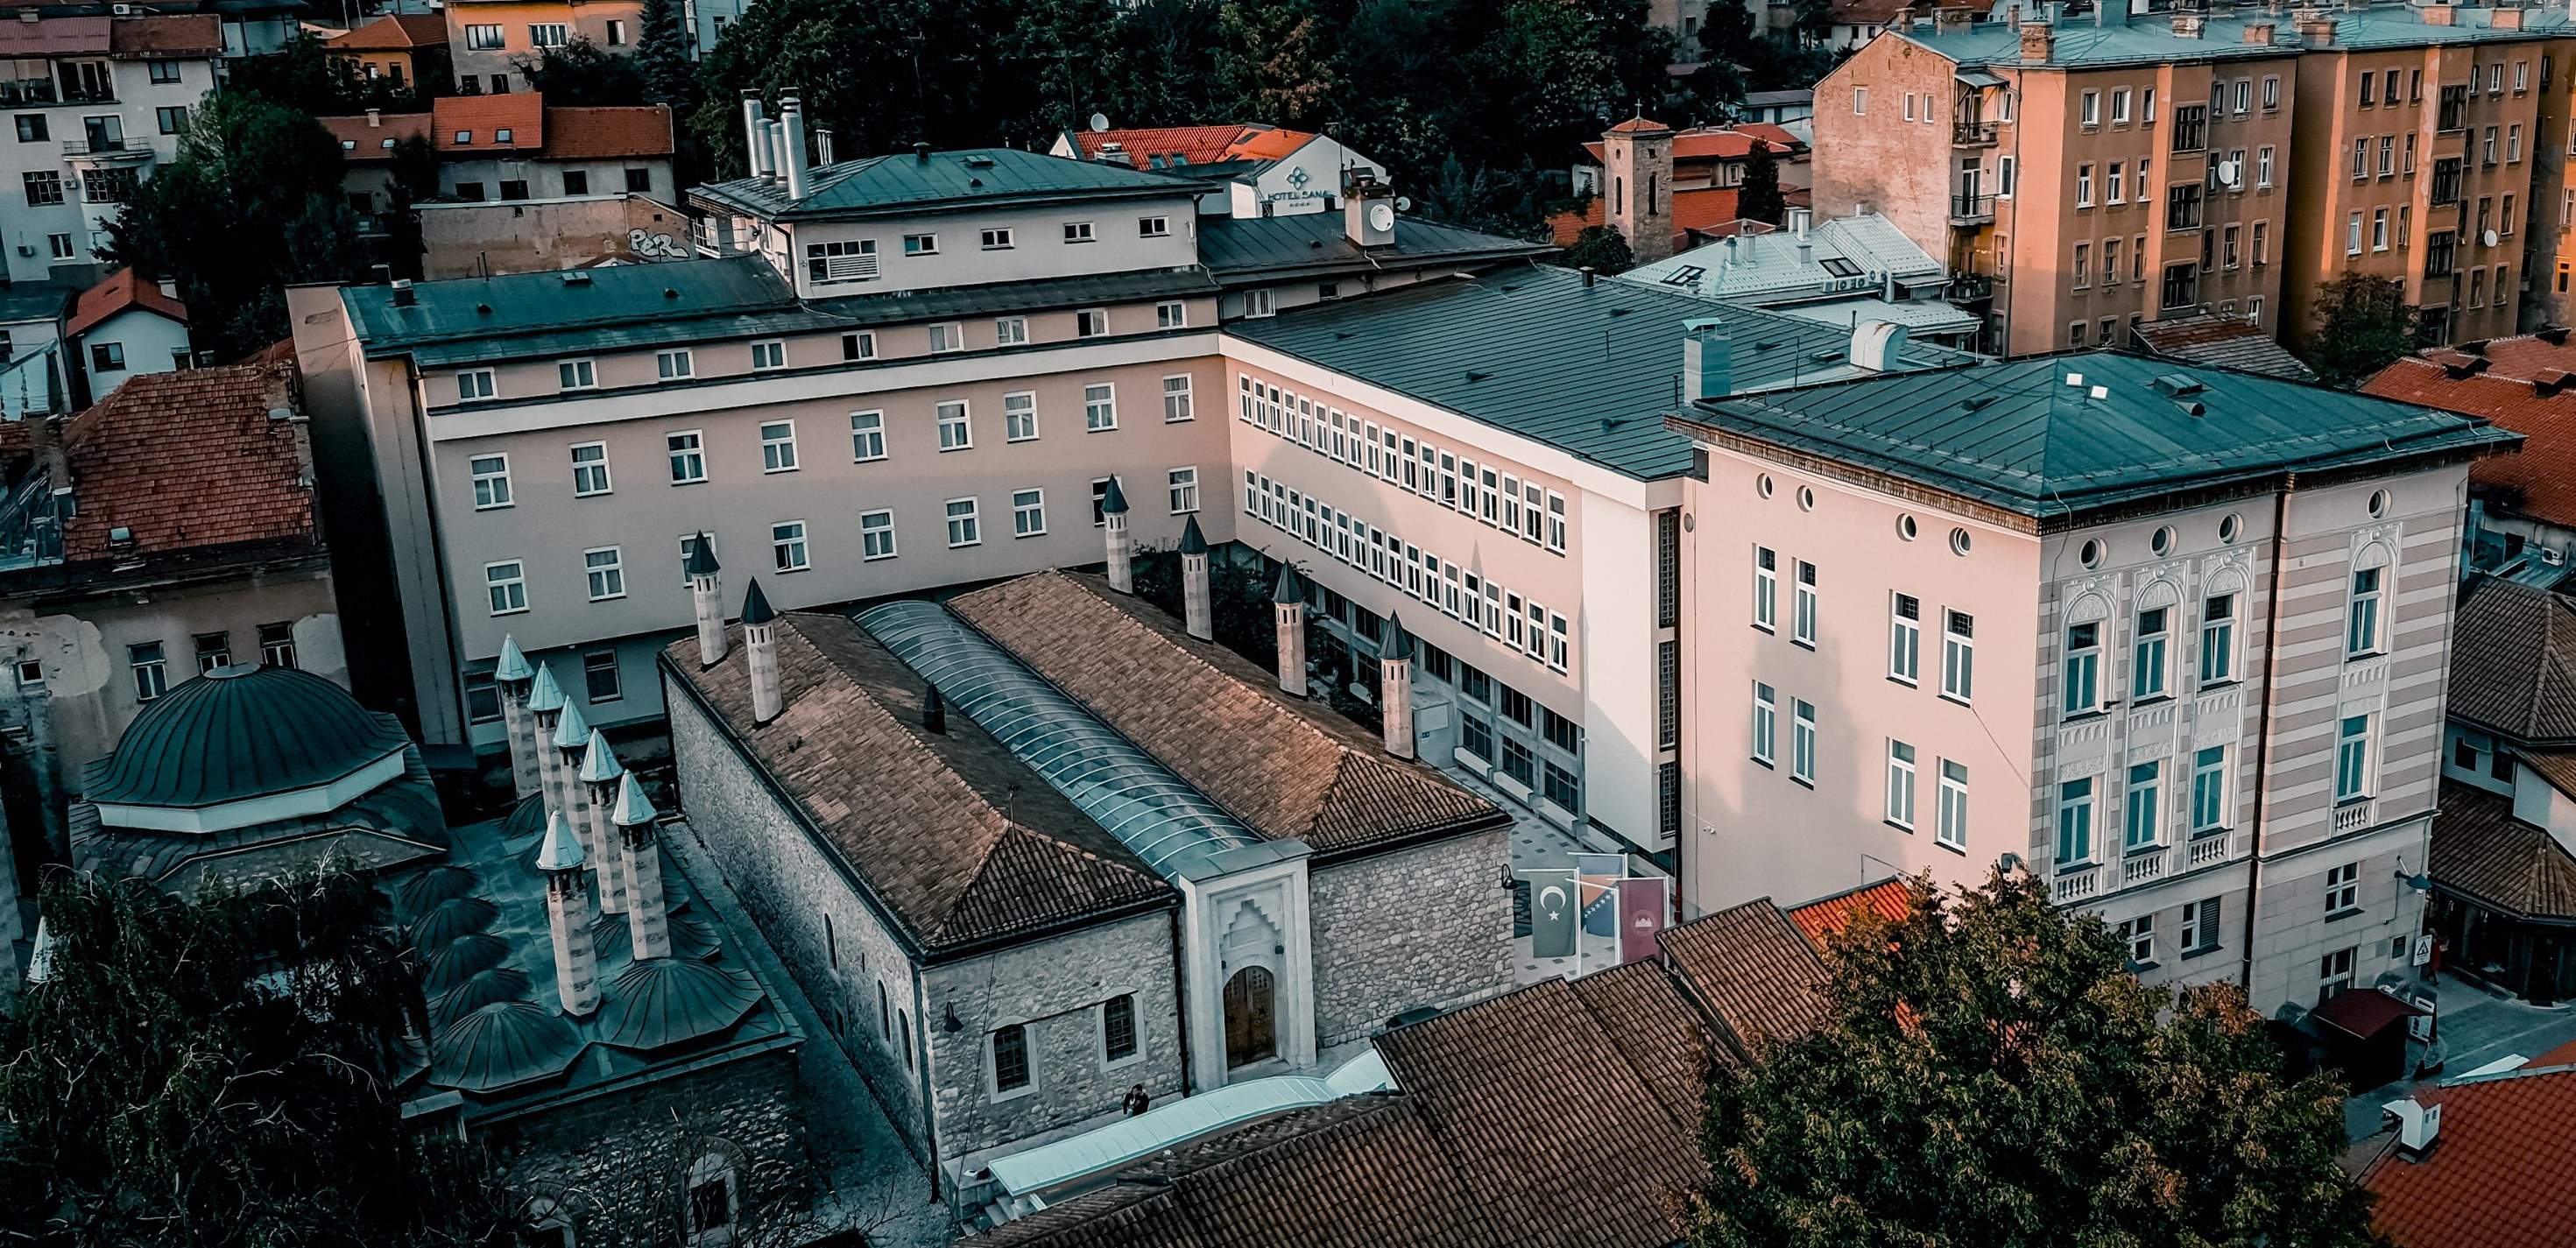 120616261_10157605018733085_5182442480823298416_n.jpg - Upis u srednje škole: Gazi Husrev-begova medresa u Sarajevu nudi kvalitetan odgoj i obrazovanje